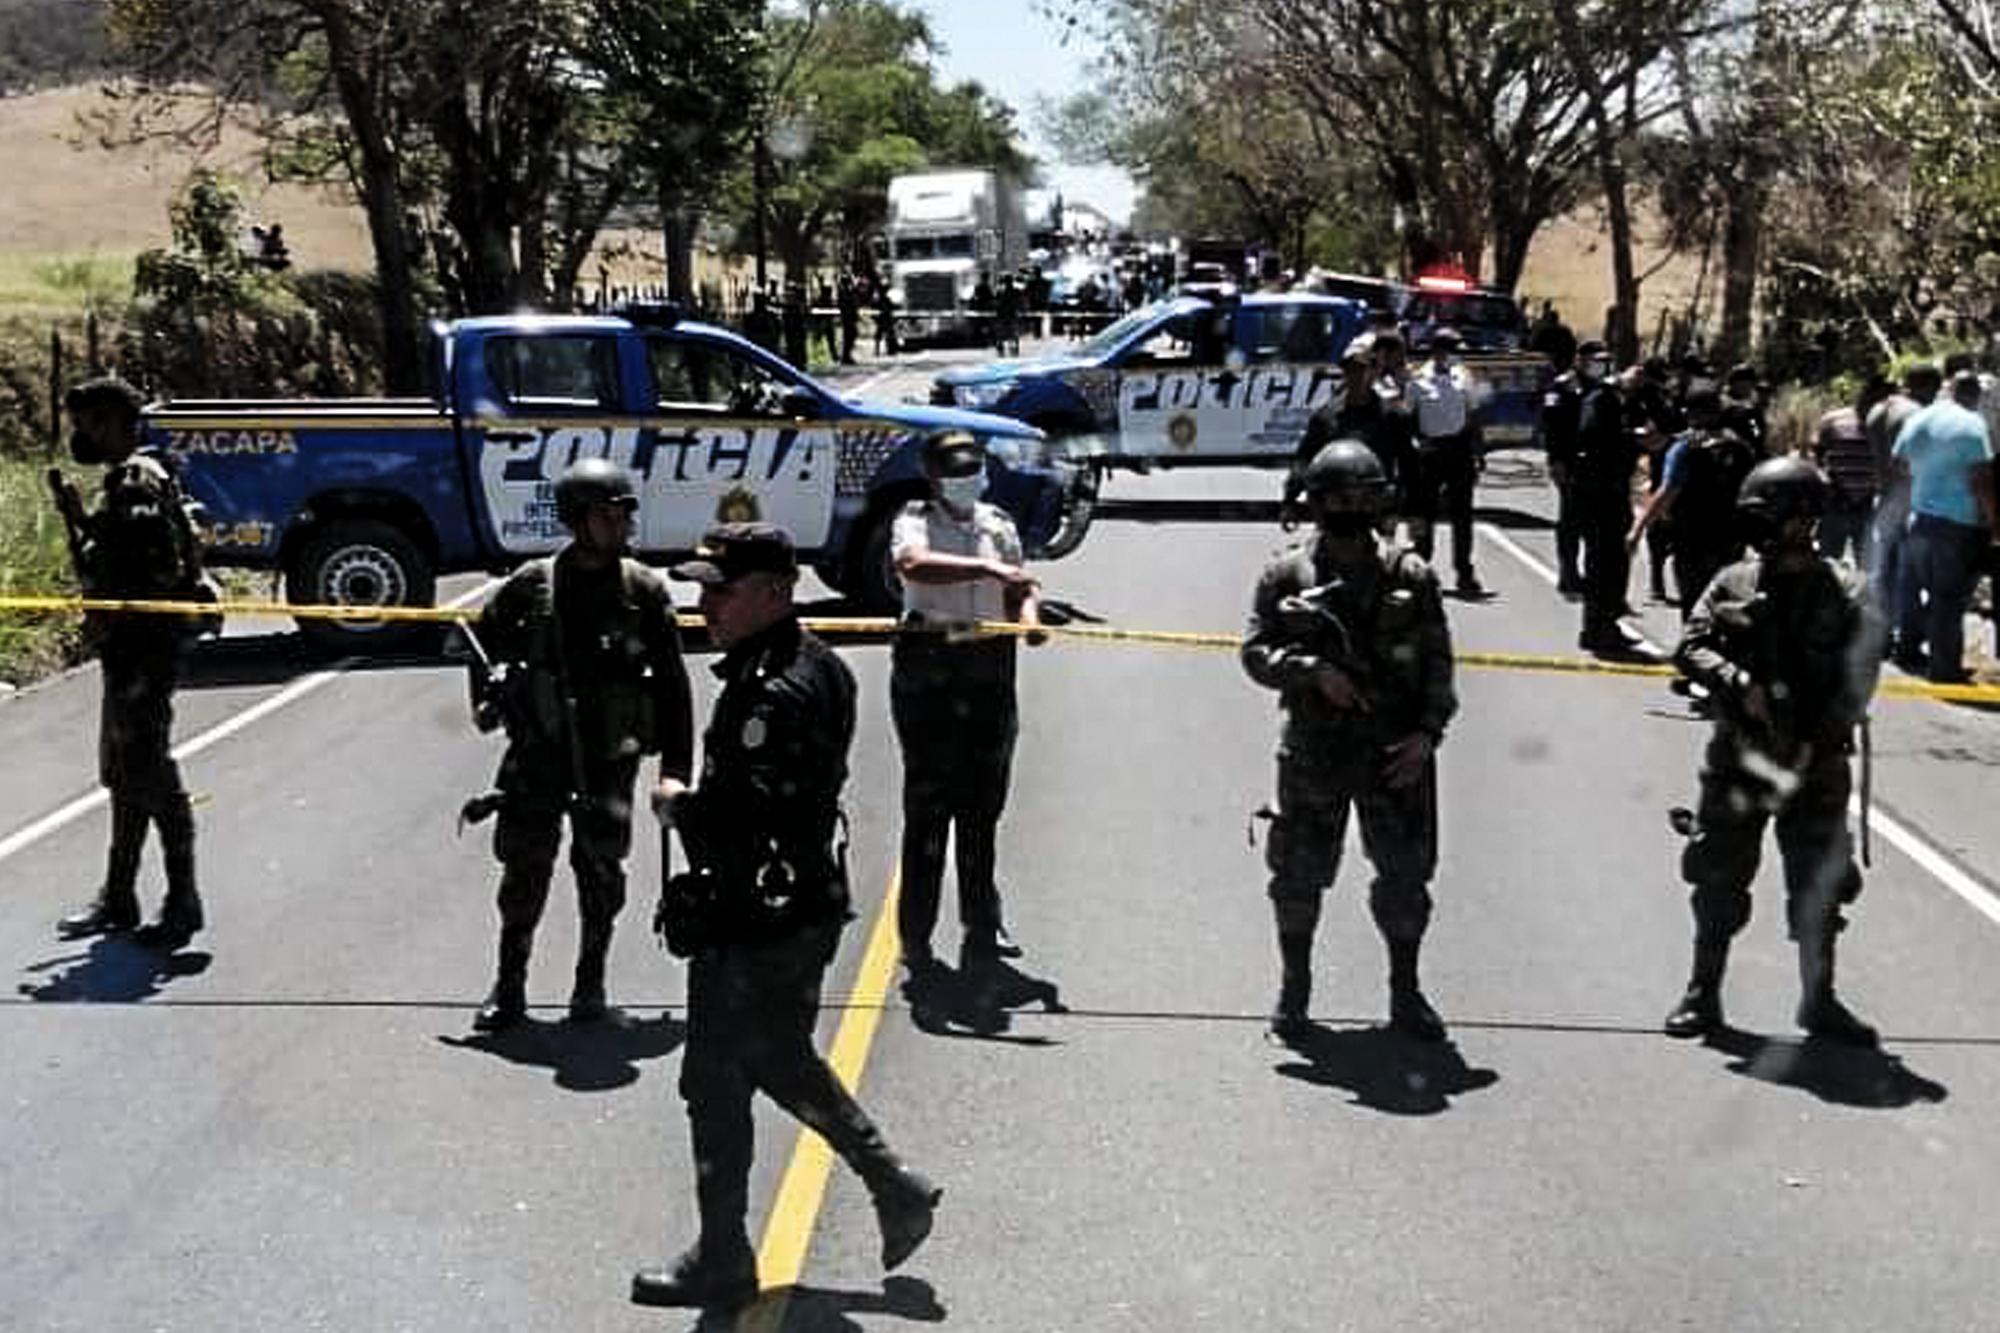 Agentes de la Policía Nacional de Guatemala custodian la escena de enfrentamiento armando en el municipio de Gualán, departamento de Zacapa, en marzo de este 2021. Dos personas fueron asesinadas en la balacera. Foto de El Faro: Cortesía.